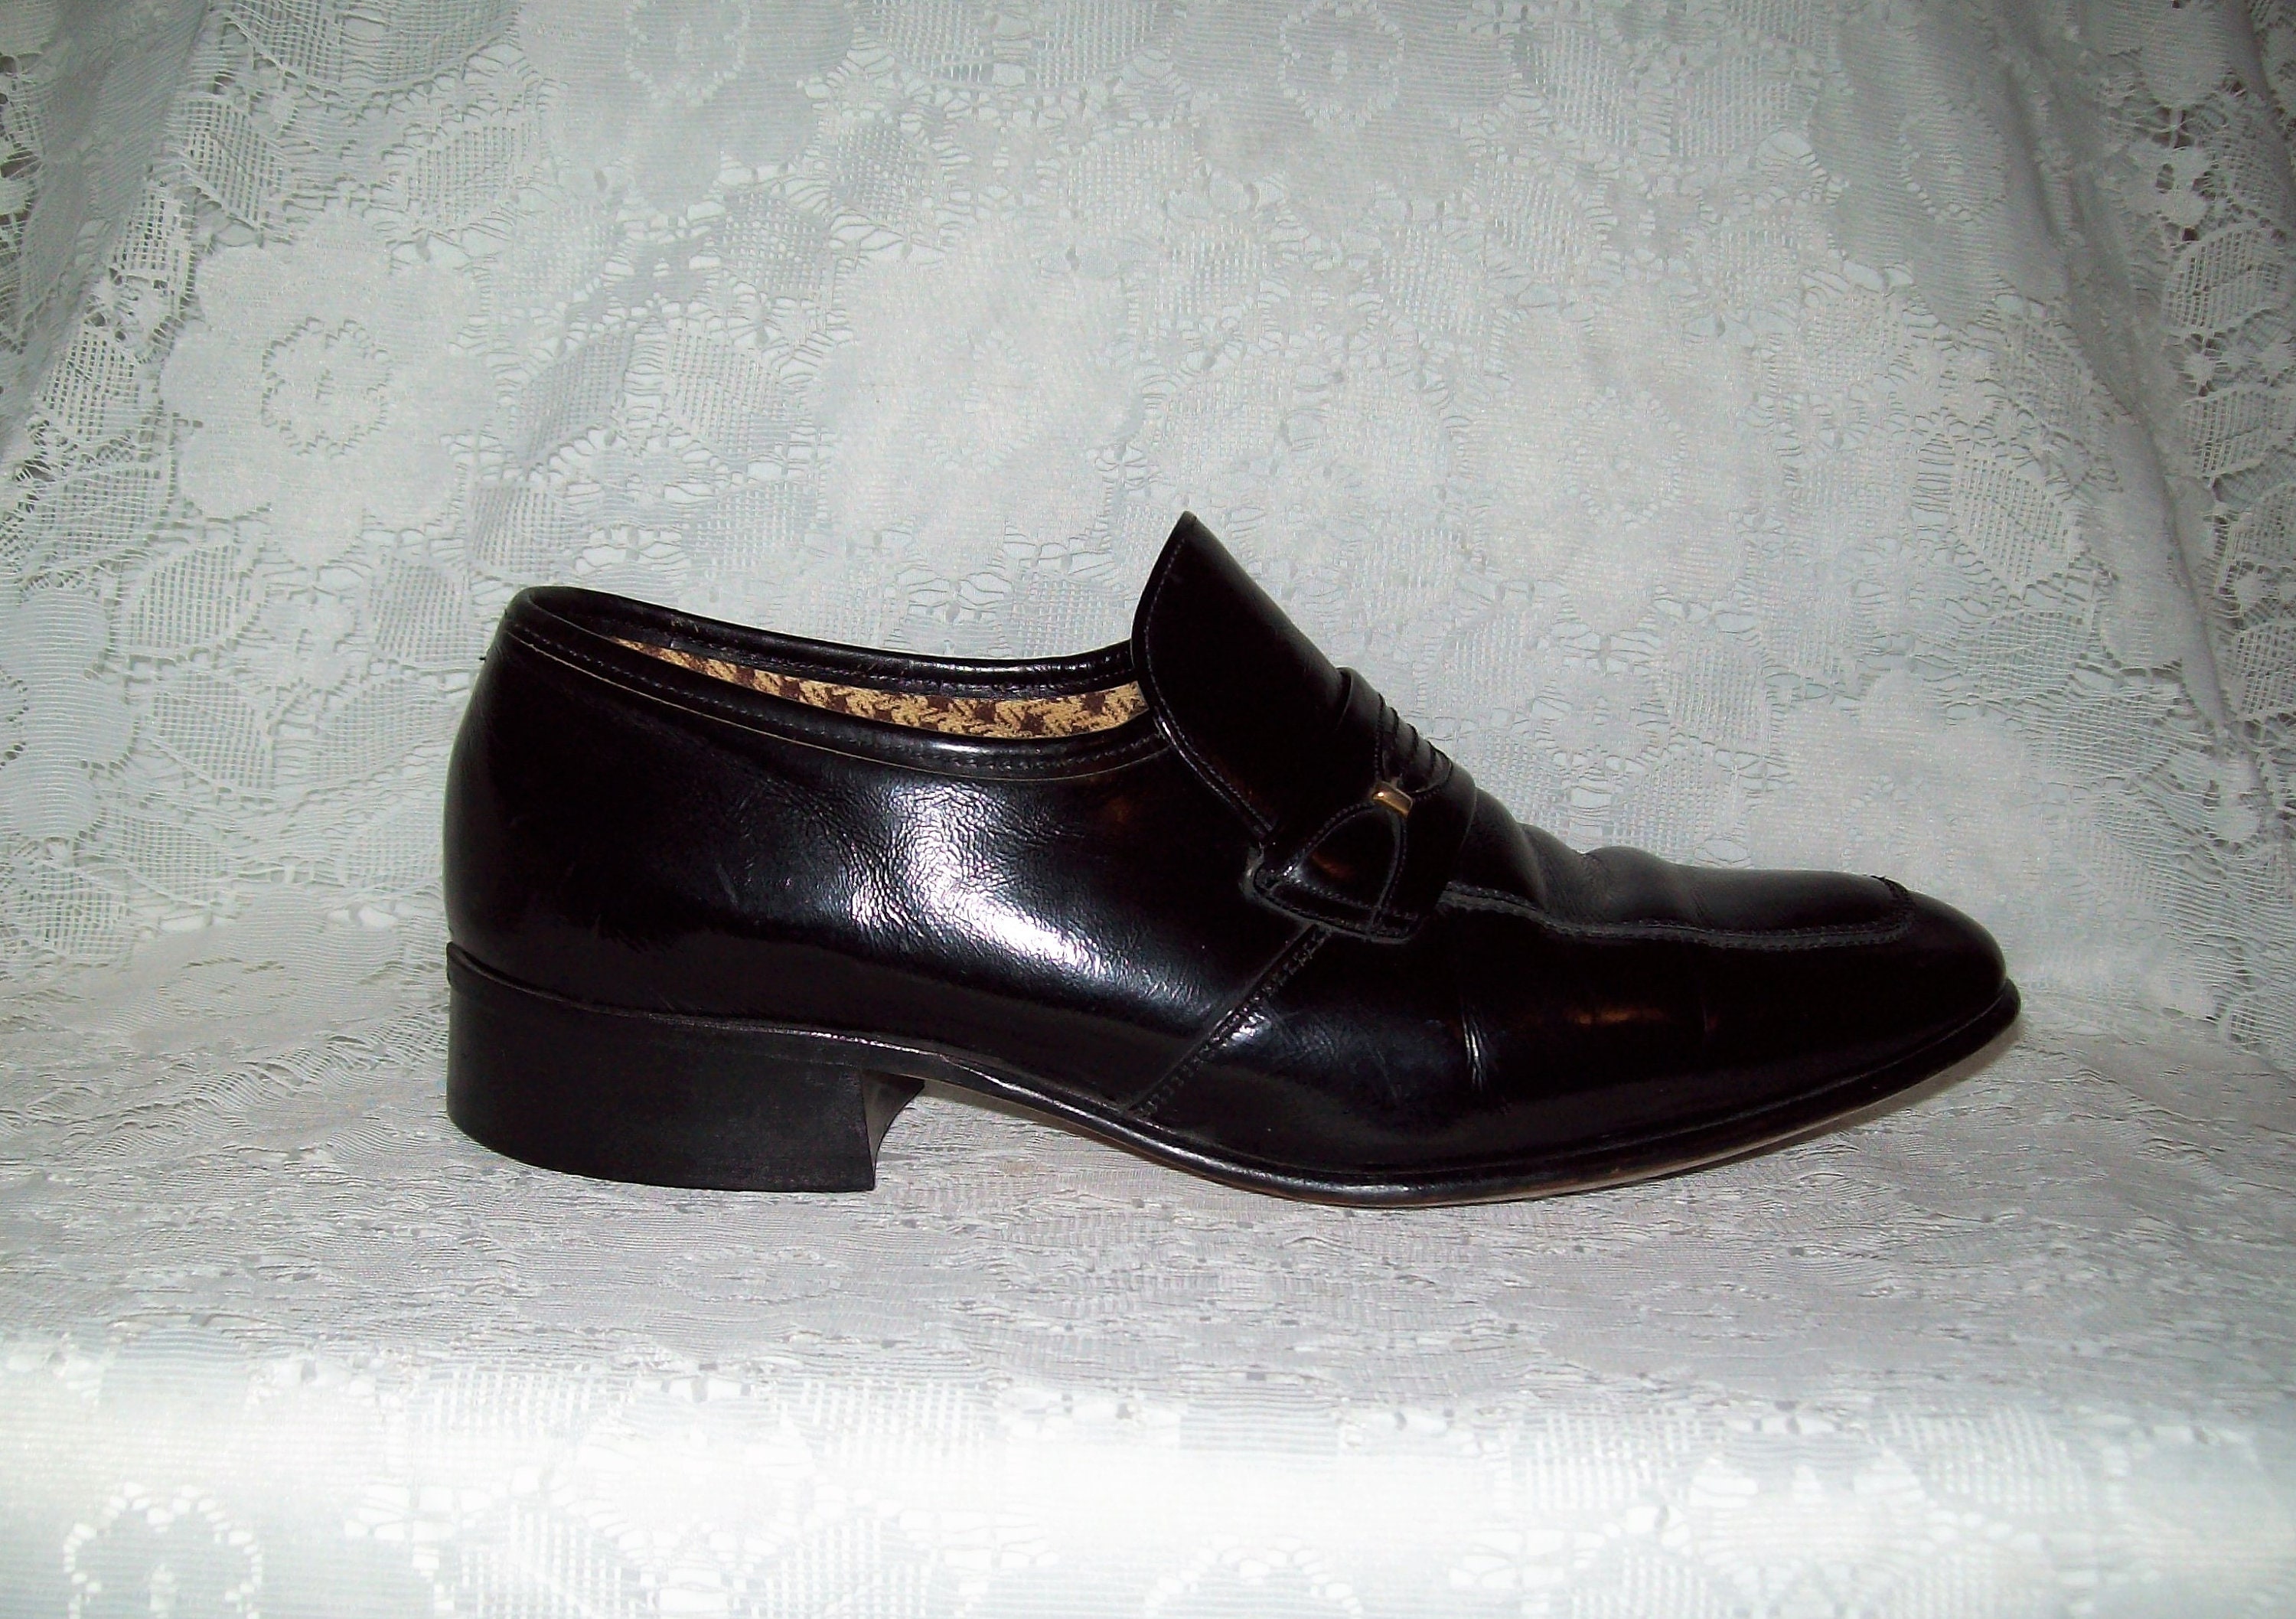 Vintage 1960s Men's Black Leather Slip Ons Loafers Light | Etsy